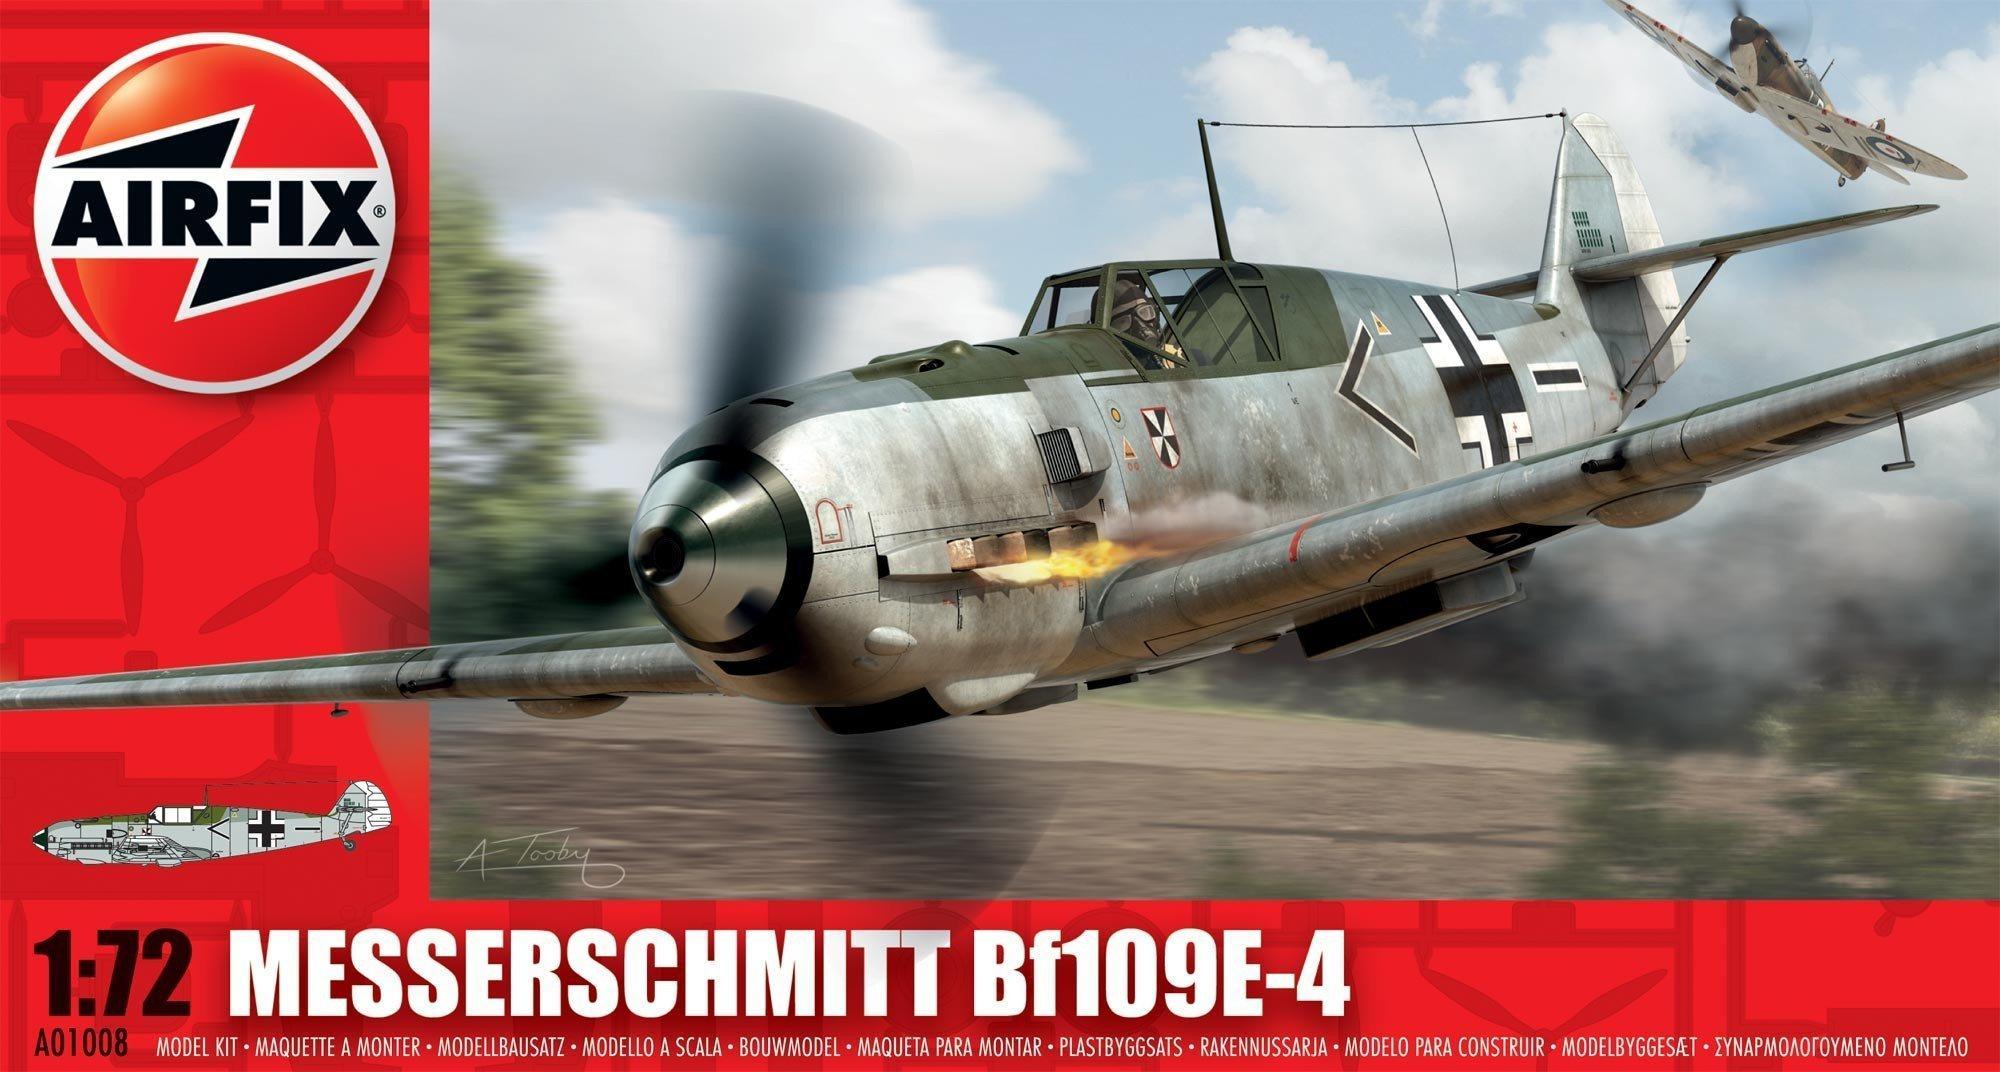 AIRFIX 1:72 Messerschmitt BF109E WW2 Model Aircraft Kit